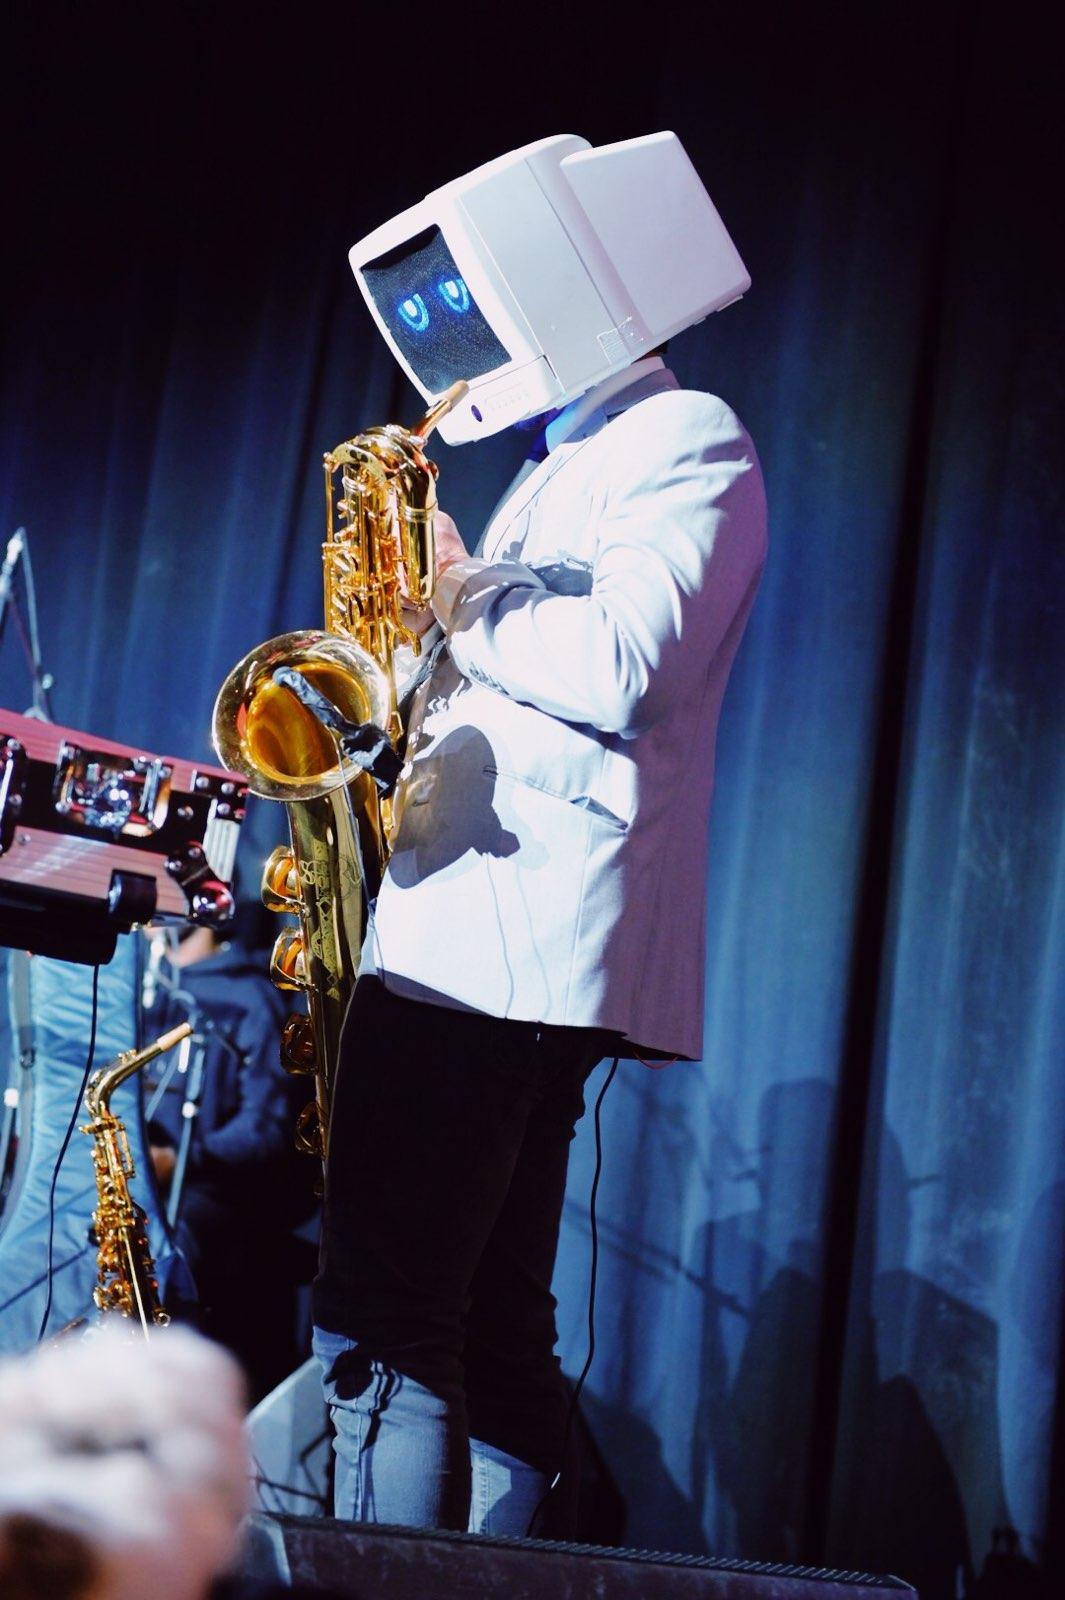 Robot DJ plays the saxophone